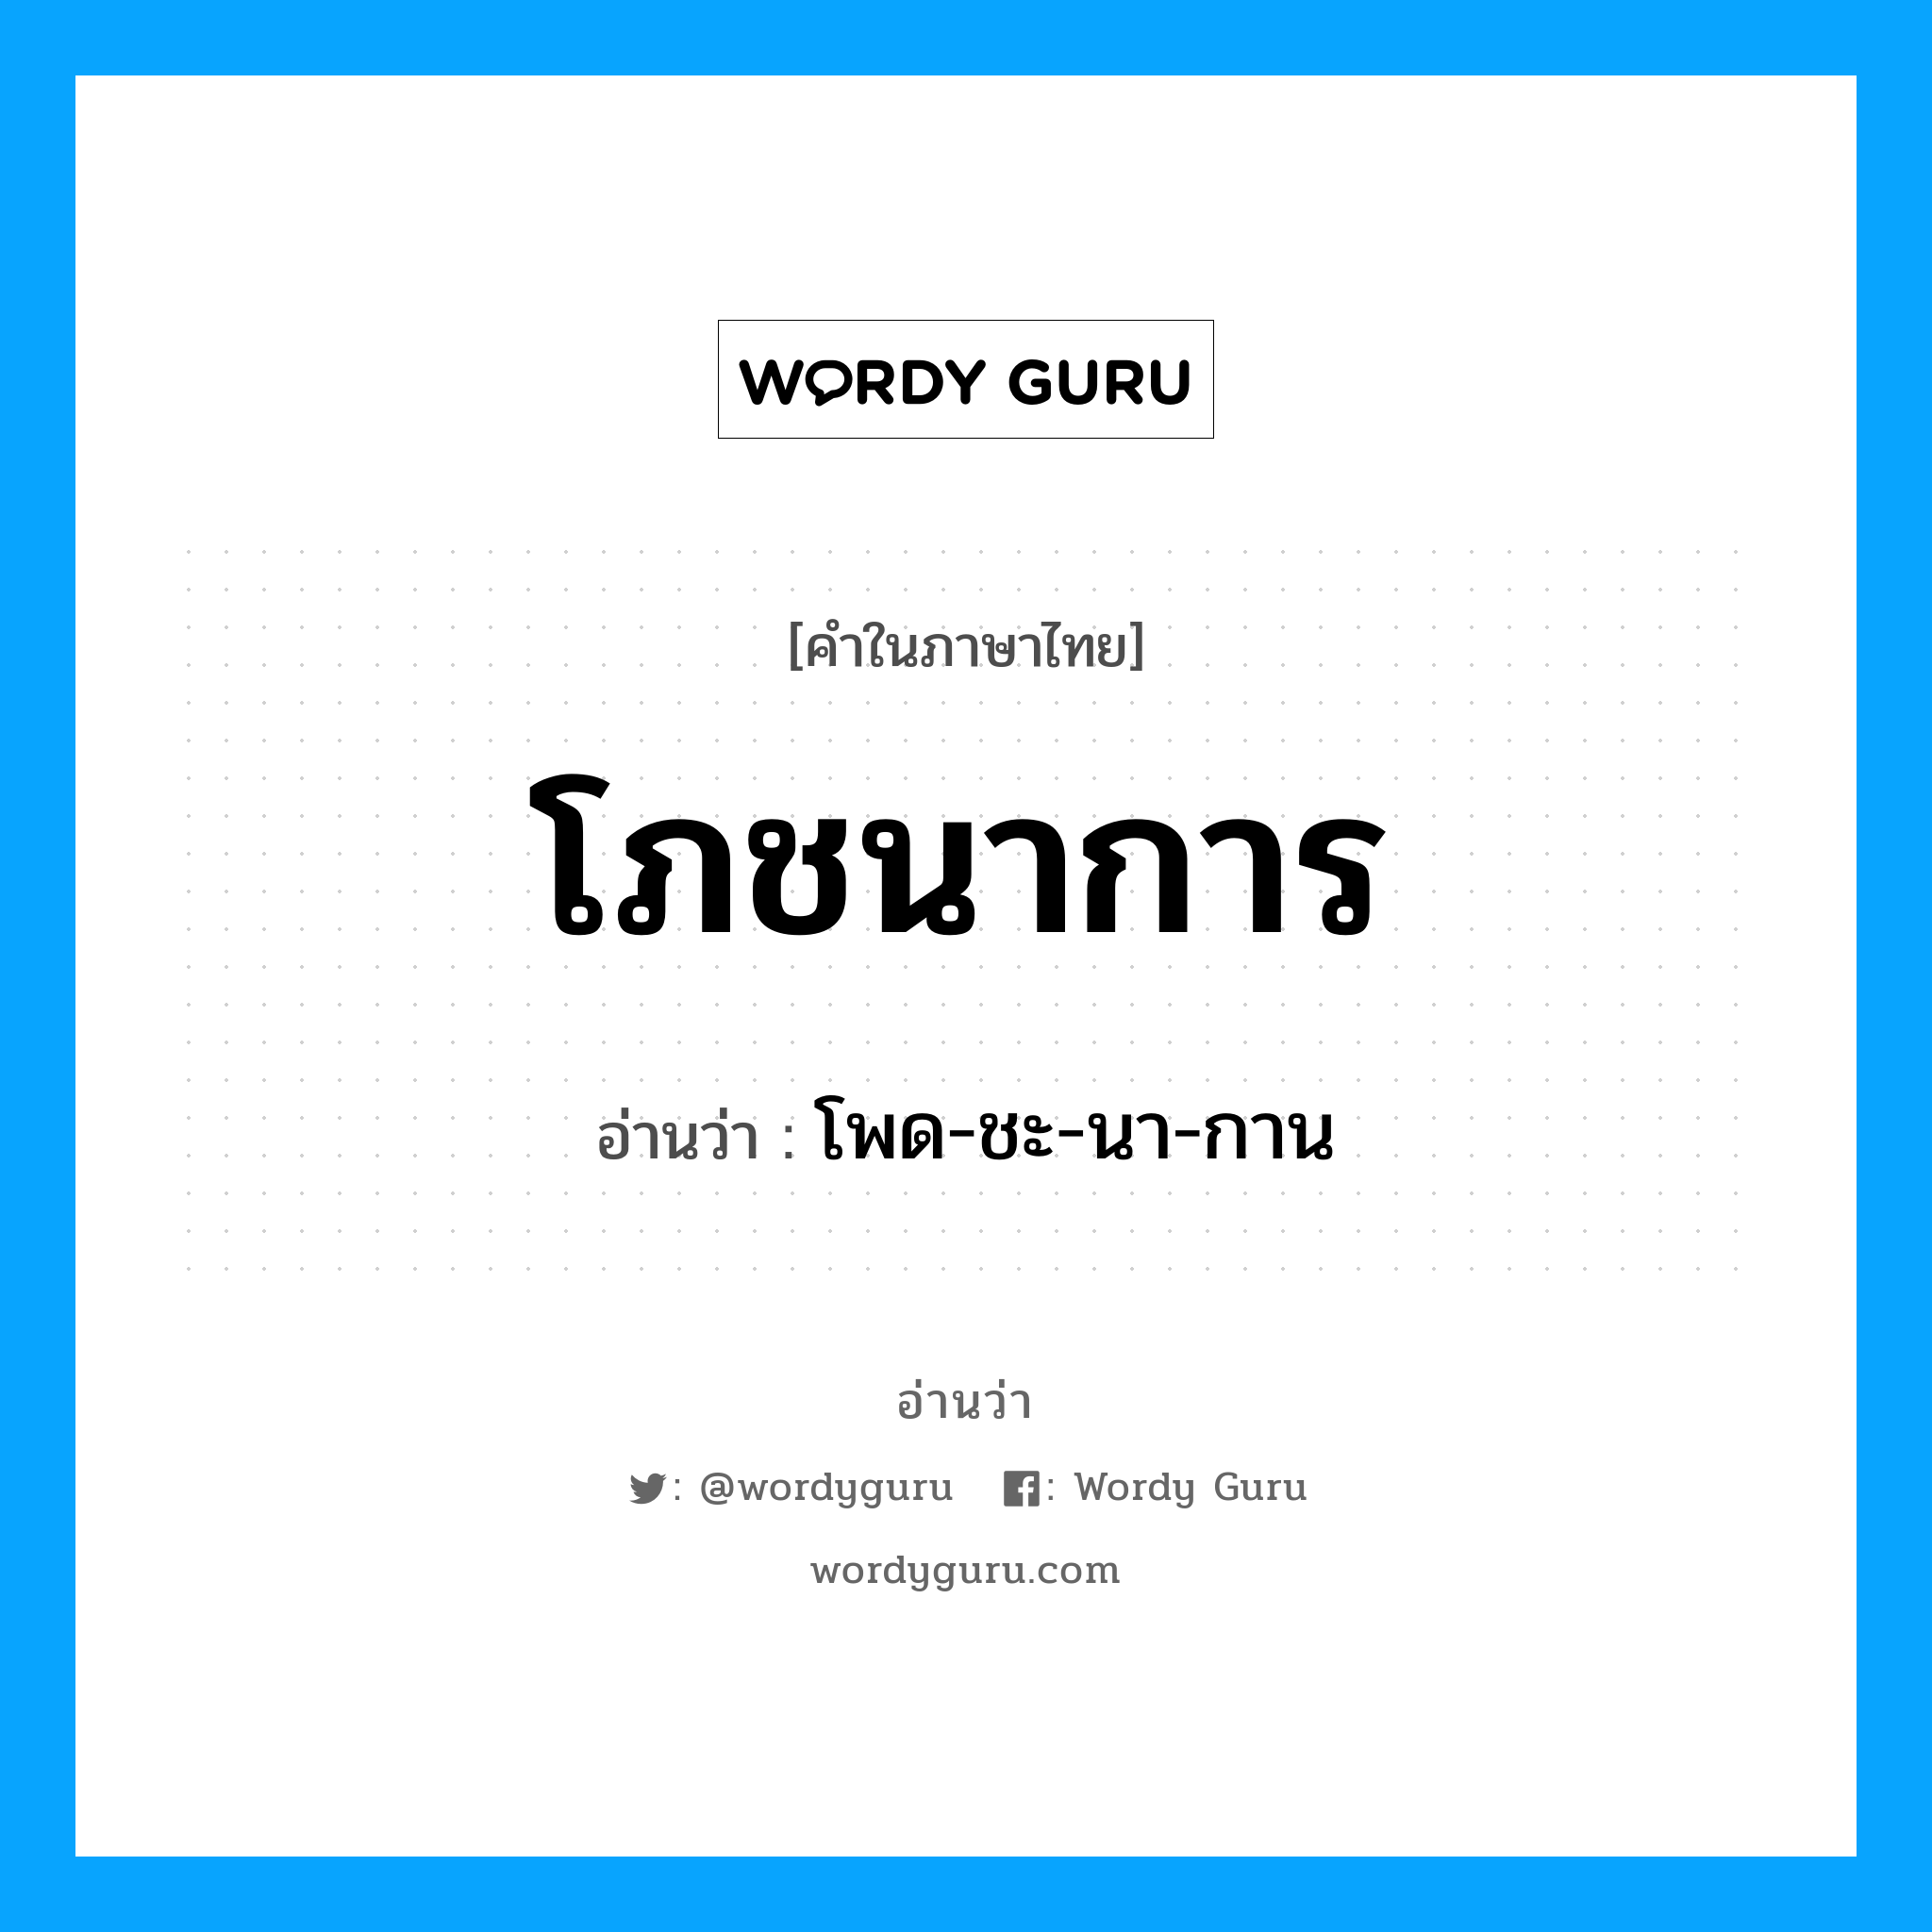 โพด-ชะ-นา-กาน เป็นคำอ่านของคำไหน?, คำในภาษาไทย โพด-ชะ-นา-กาน อ่านว่า โภชนาการ